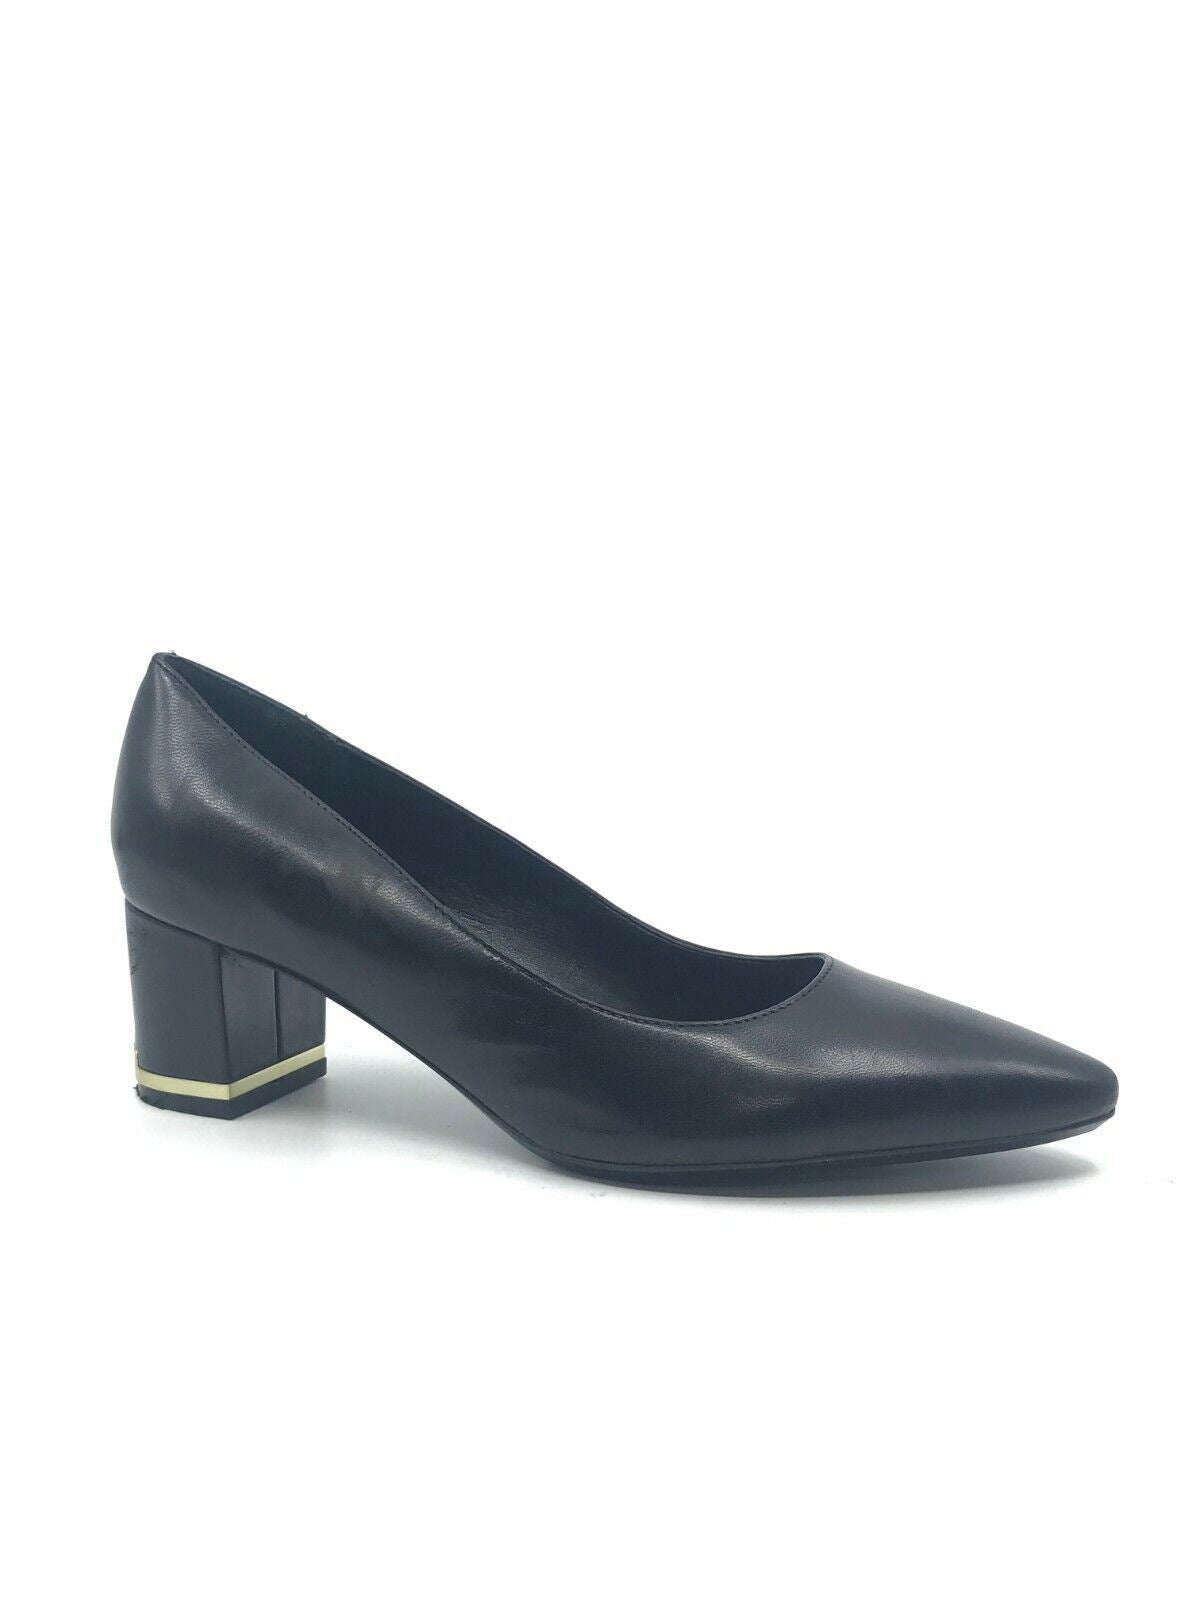 Calvin Klein Women's Nita Almond Toe Pumps Black Size: 7M – Jonesse Fashions